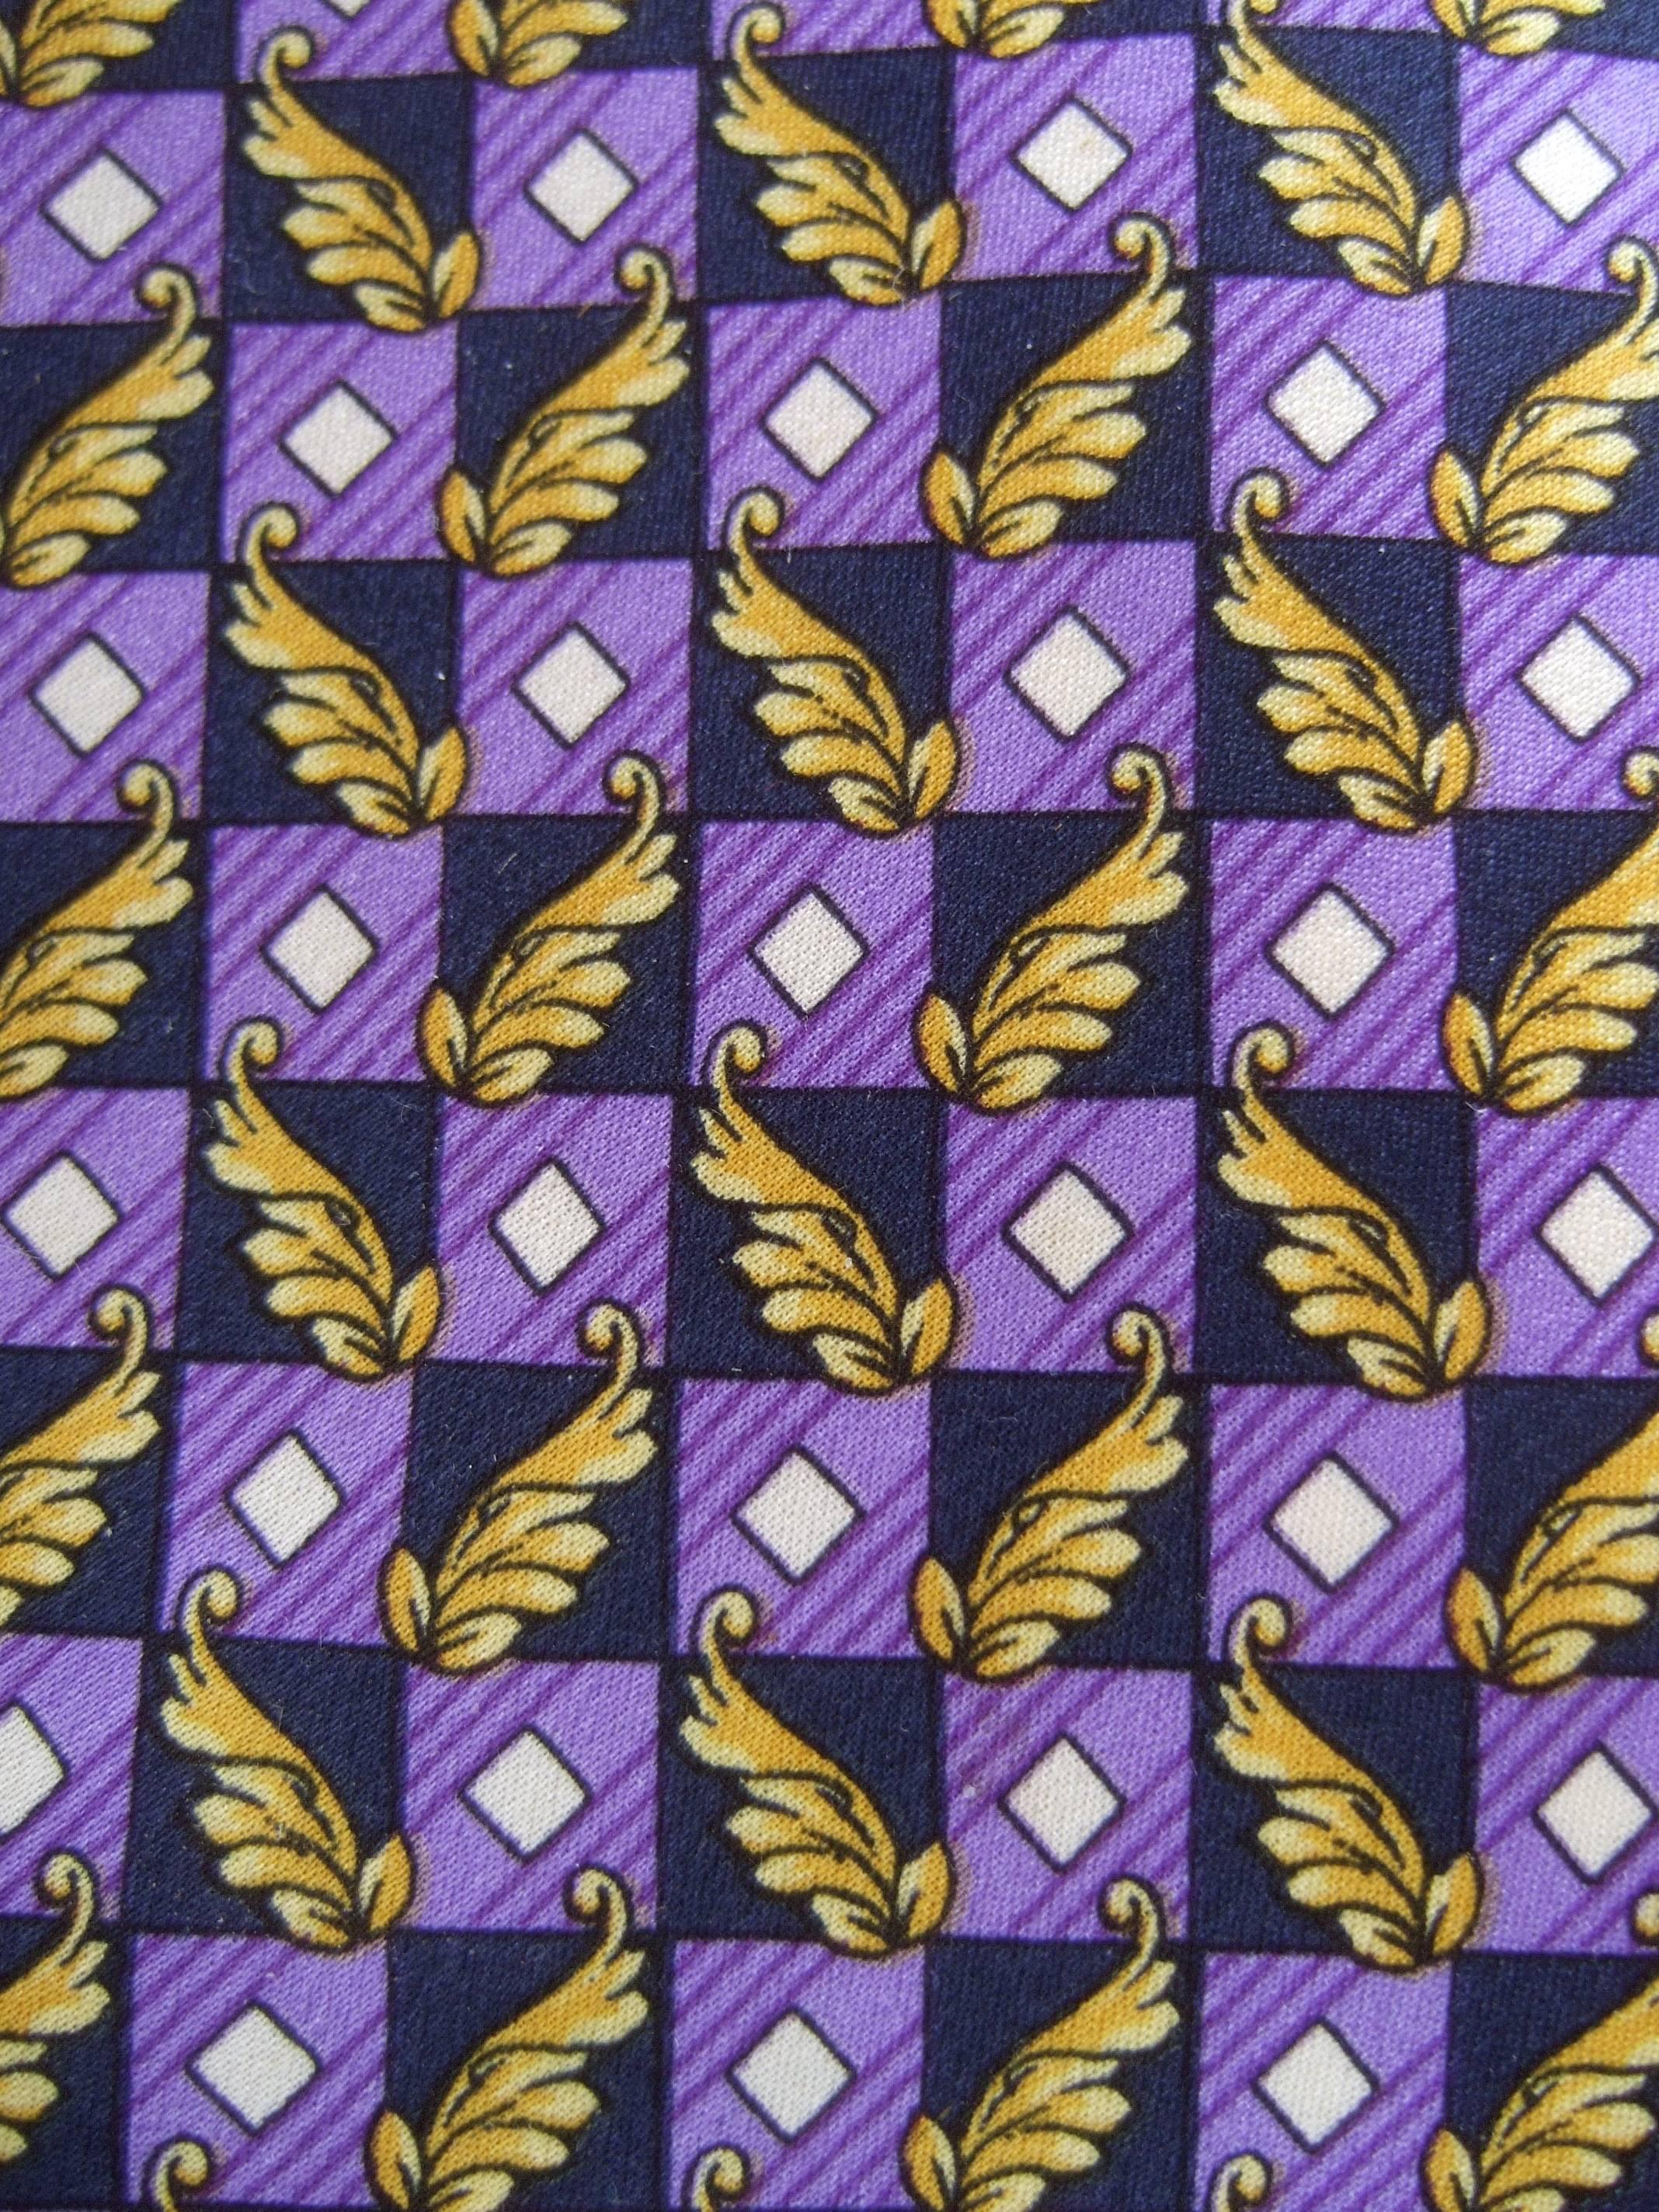 Versace Italienische Seidenkrawatte mit violettem und goldenem Grafikdruck aus den 1990er Jahren
Die stilvolle Designer-Krawatte ist mit violetter Farbe illustriert
blockgrafiken neben goldenem Laubwerk 

Das geometrische Kastendesign ist auf der